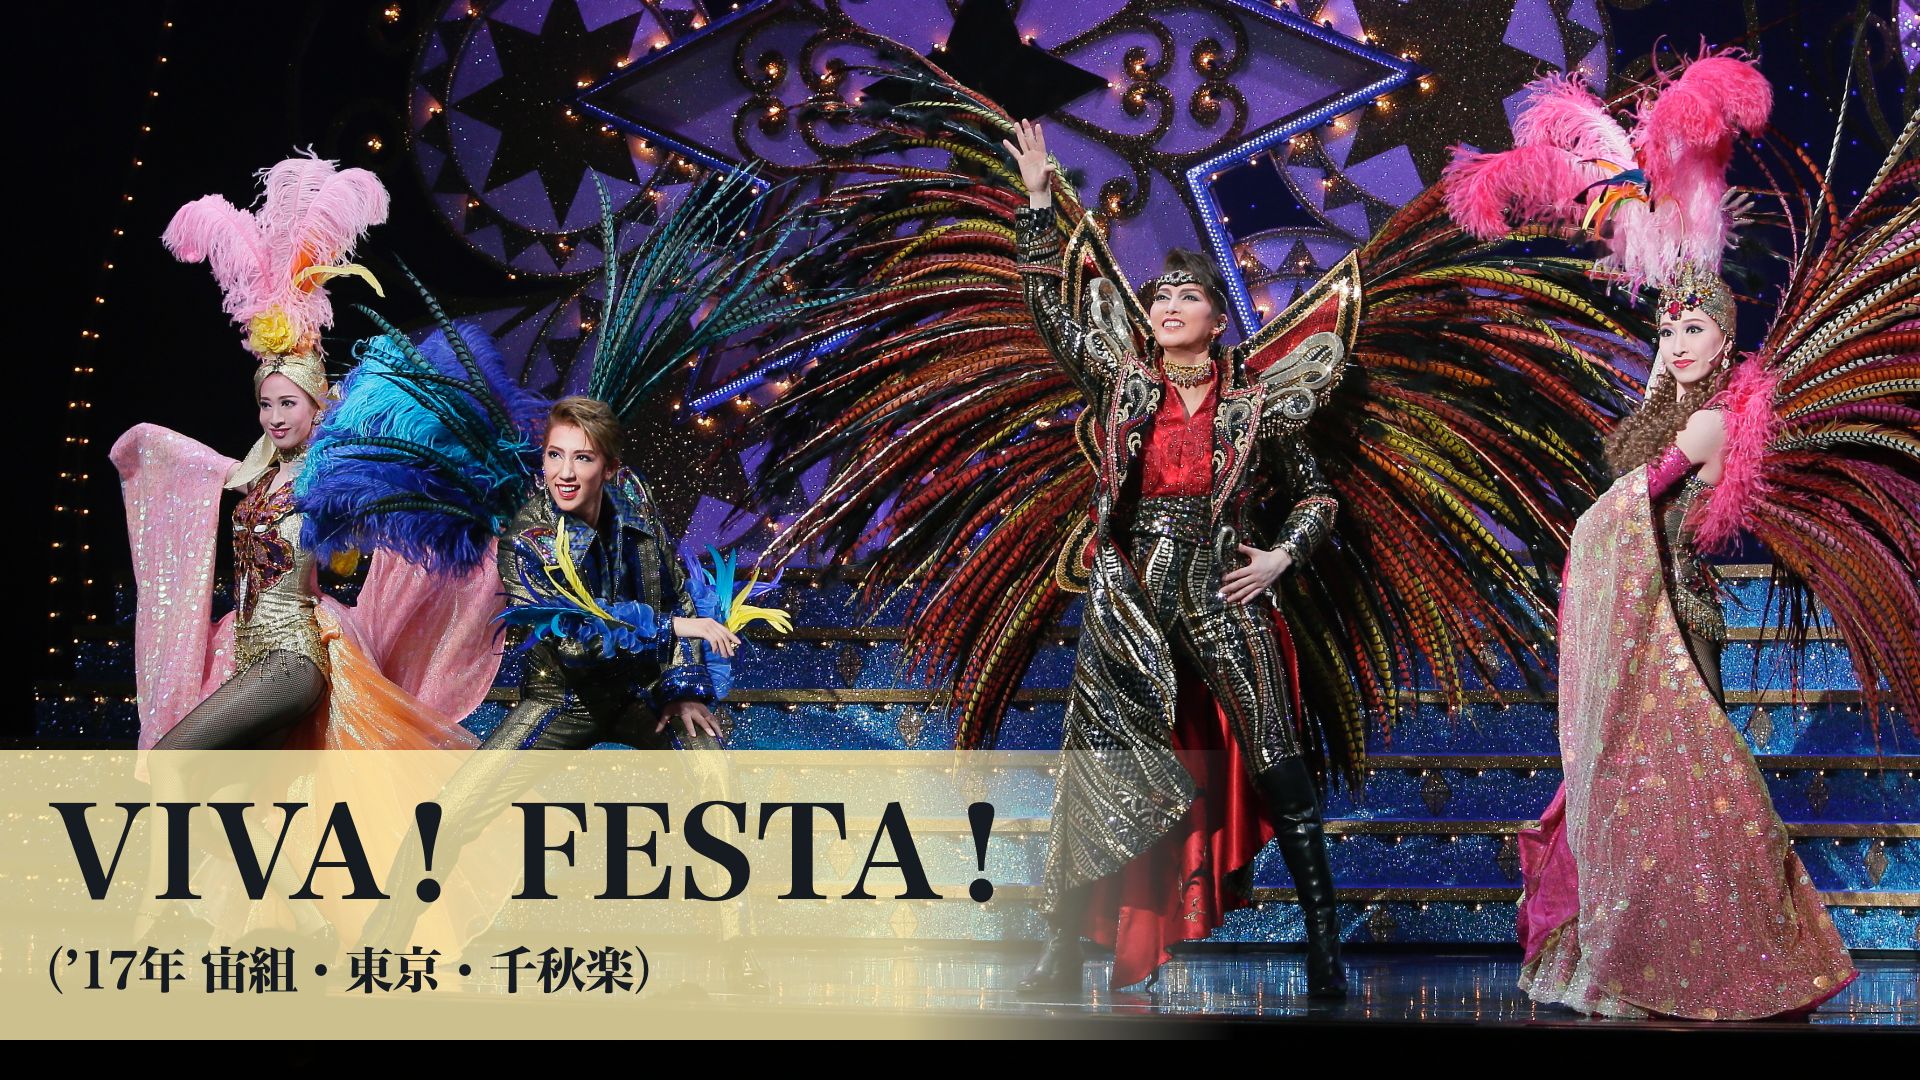 宝塚歌劇 VIVA! FESTA!(’17年宙組・東京・千秋楽)